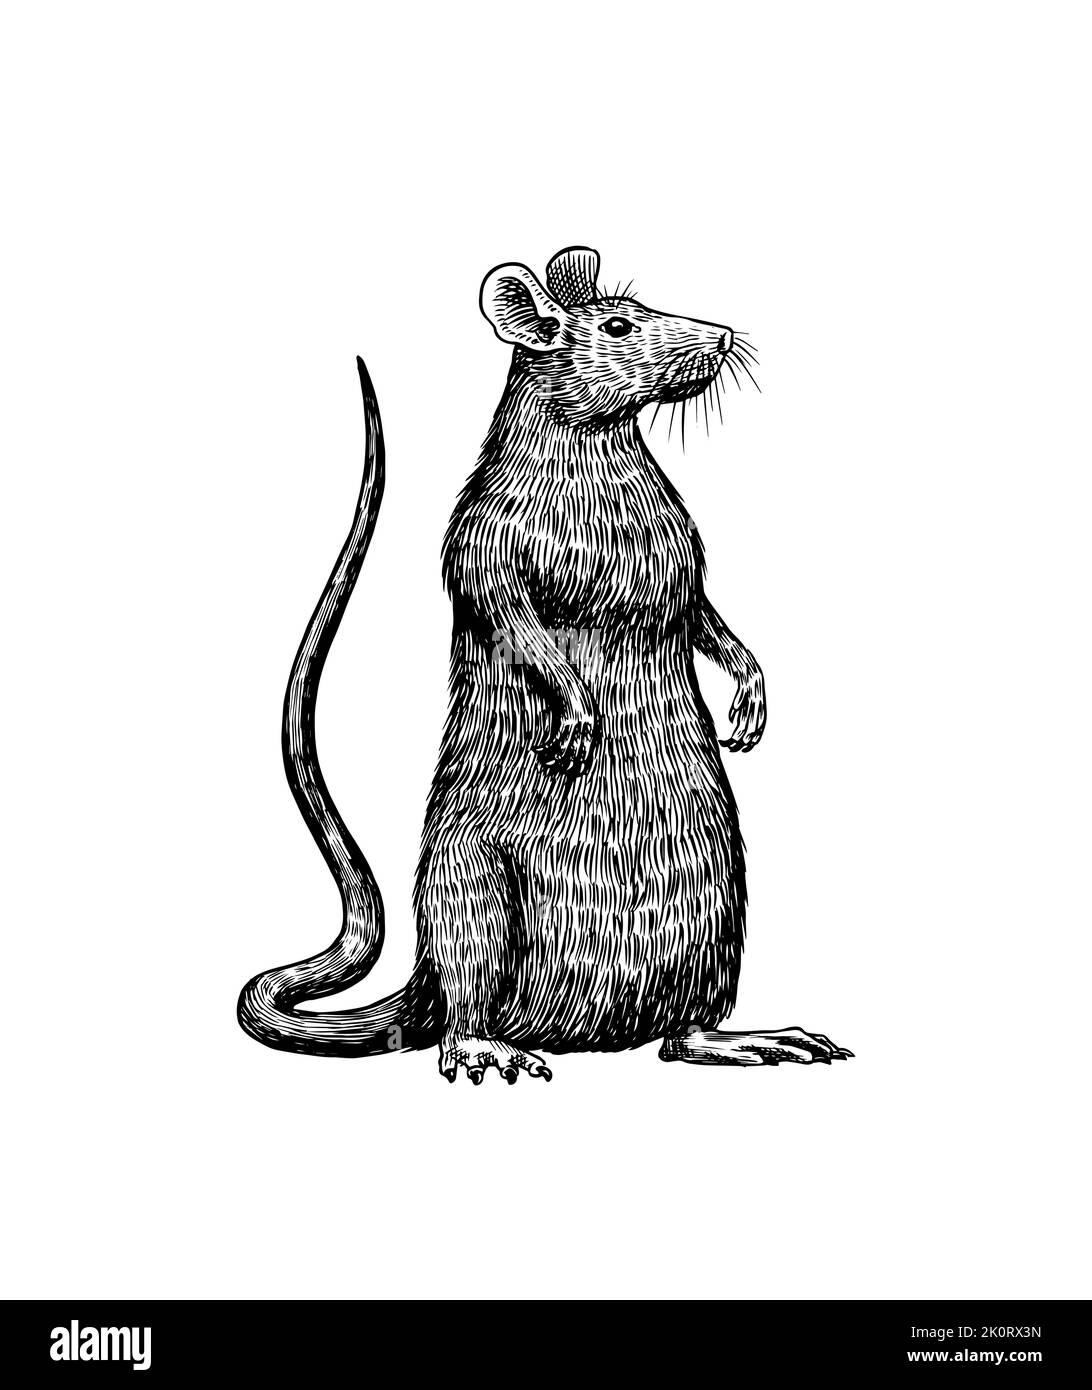 Rat ou souris. Animal sauvage graphique. Croquis vintage dessiné à la main. Éléments de grunge gravés. Illustration de Vecteur